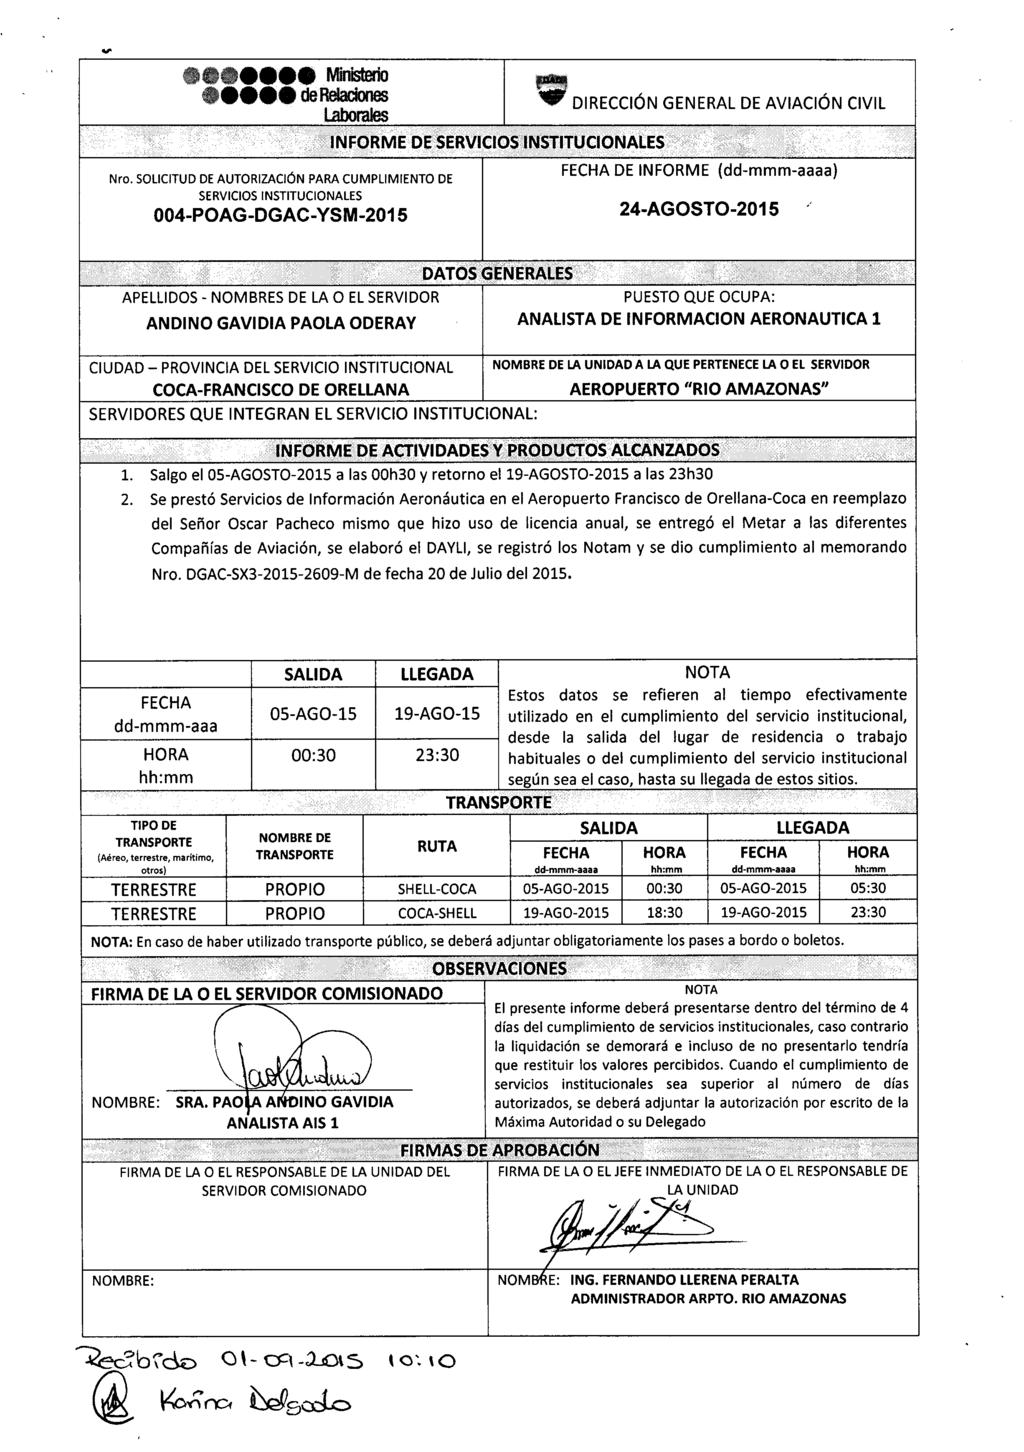 .,. Ministerio derelaciones ~' DIRECCiÓN GENERAL DE AVIACiÓN CIVIL Nro.